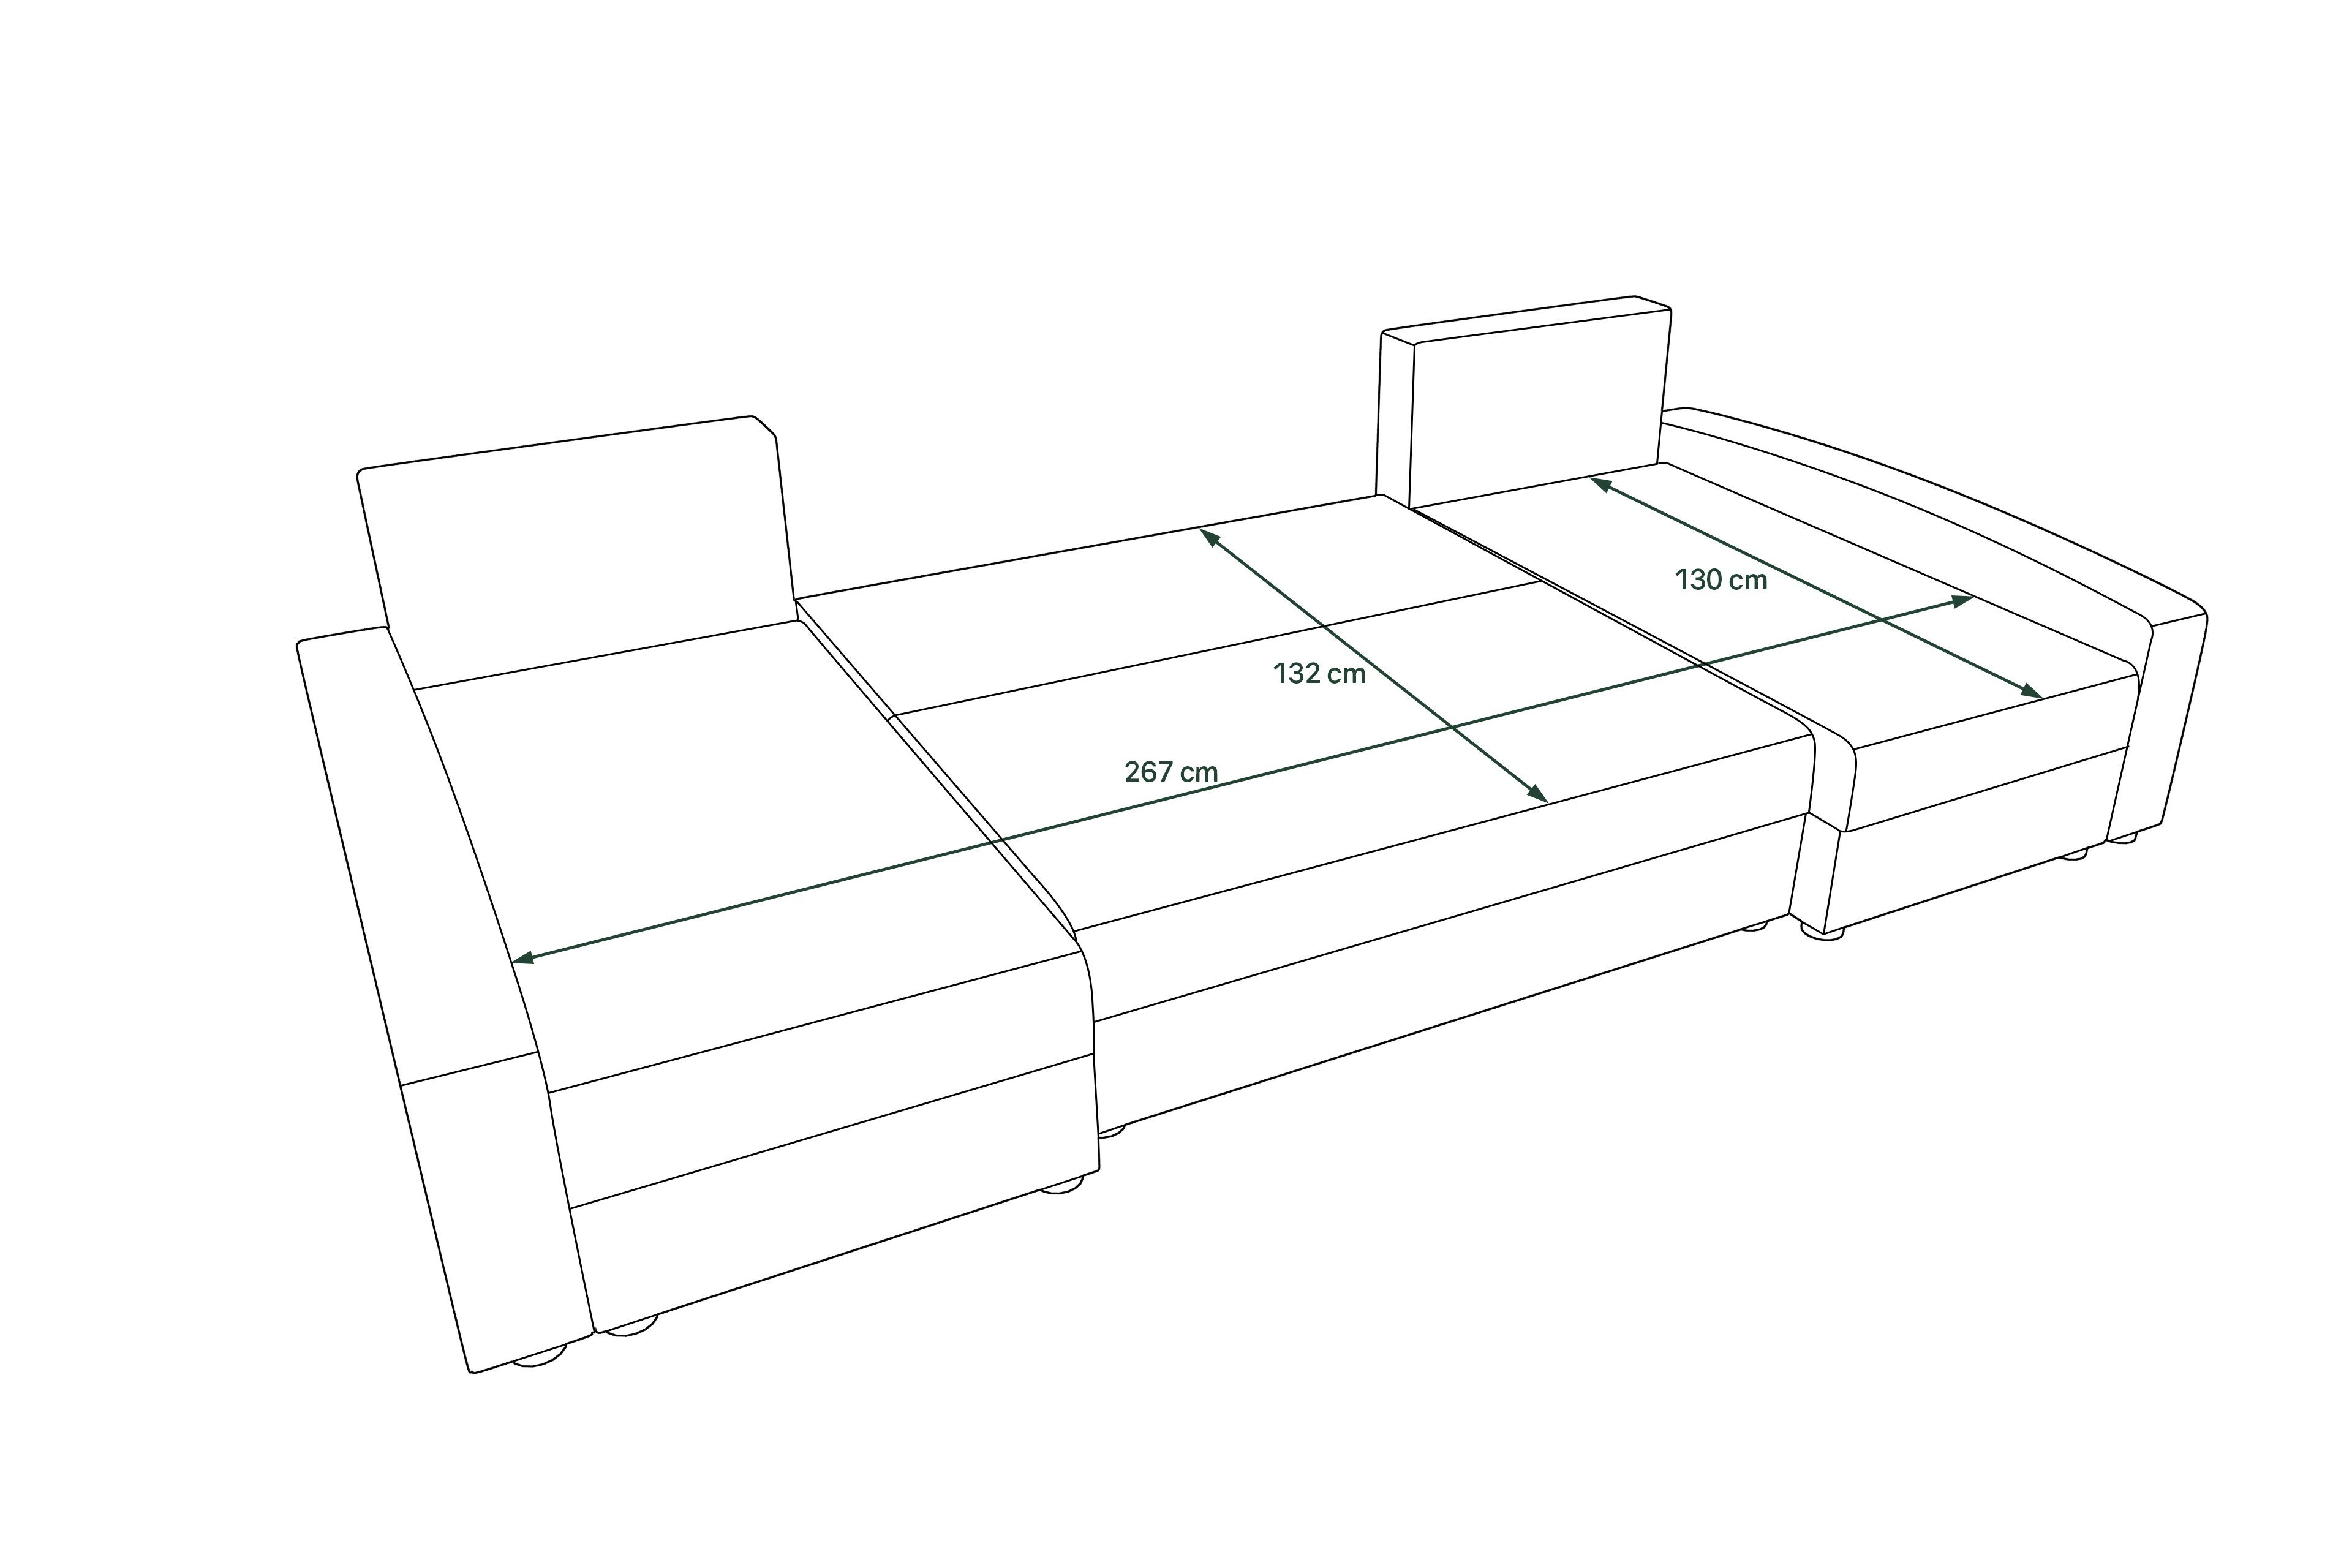 Addison, U-Form, Modern Stylefy mit Wohnlandschaft Bettkasten, Eckcouch, Bettfunktion, mit Sofa, Sitzkomfort, Design